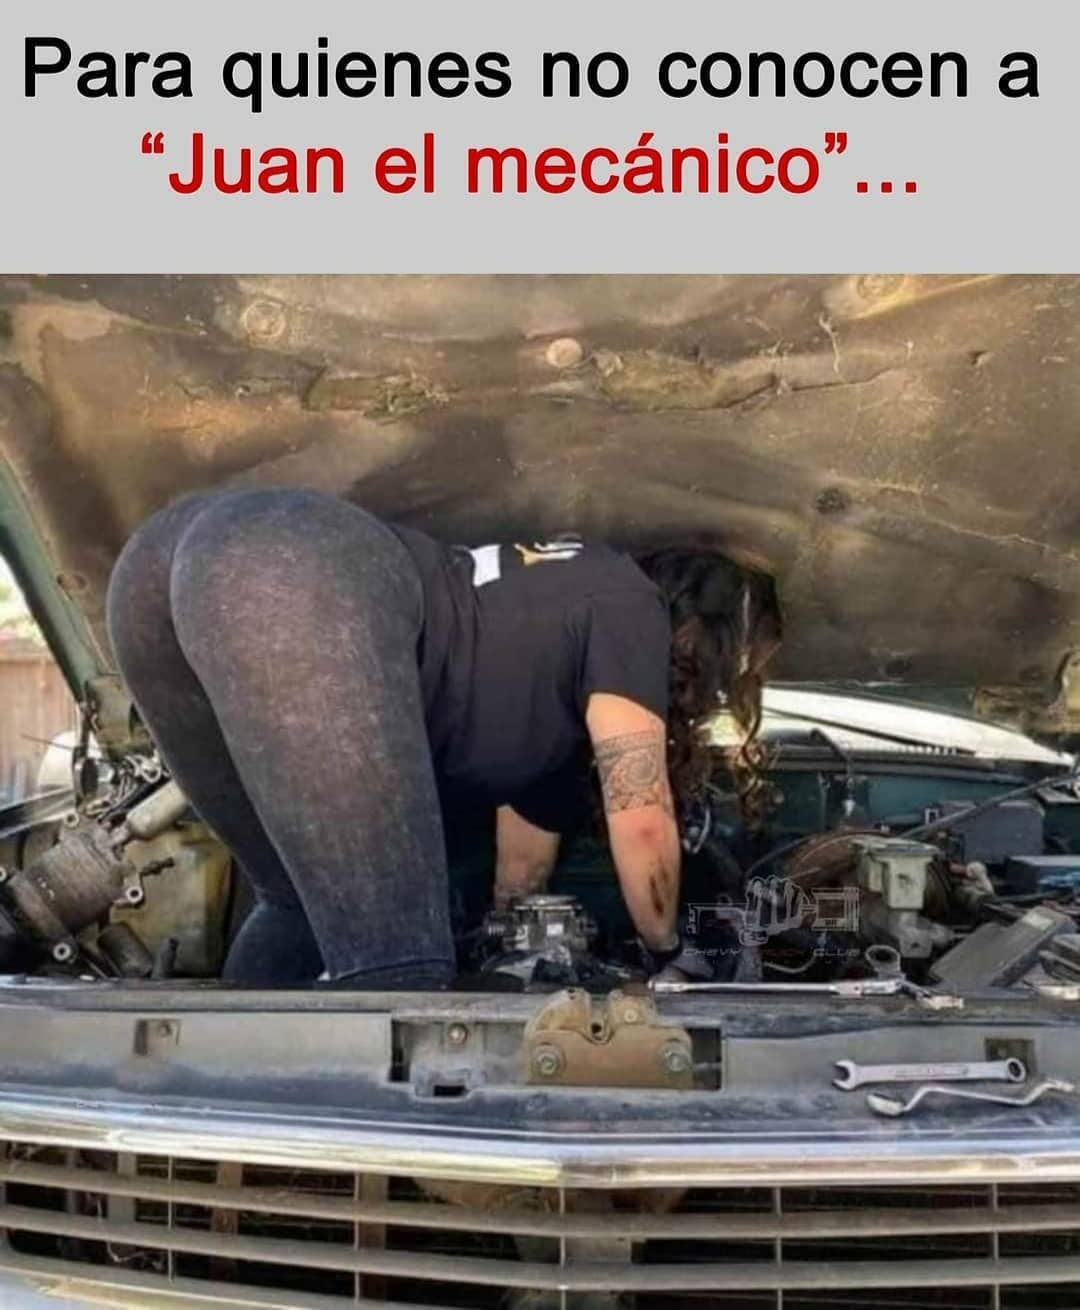 Para quienes no conocen a "Juan el mecánico"...